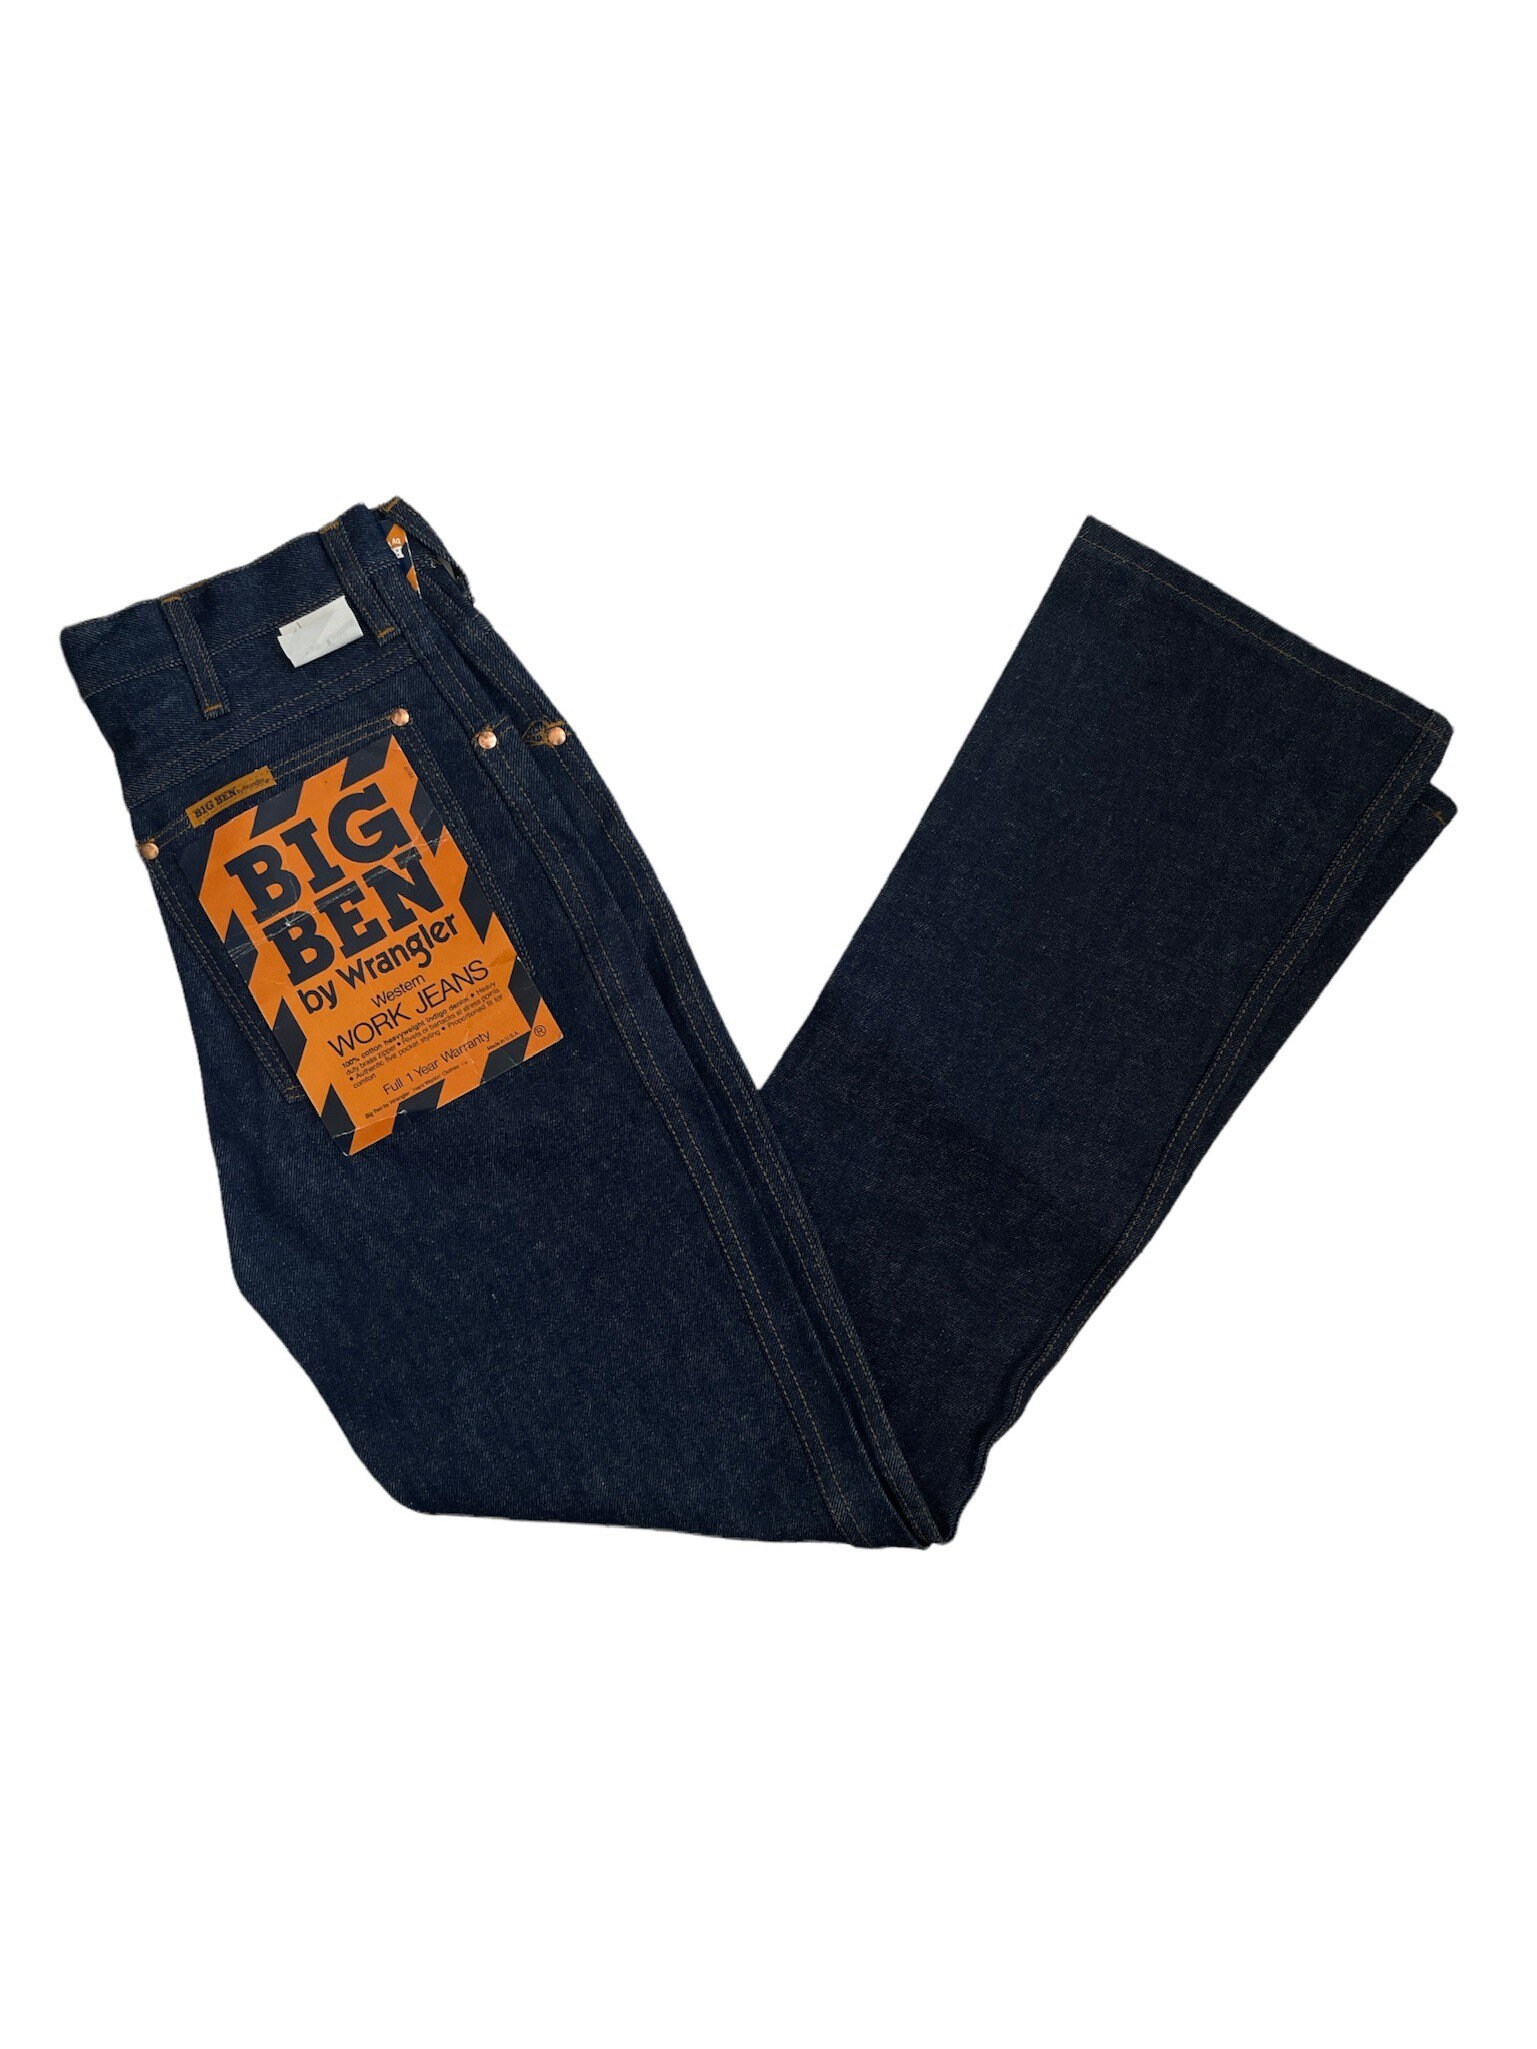 Vintage Wrangler Big Ben Western Work Jeans Size 29x32 - Etsy